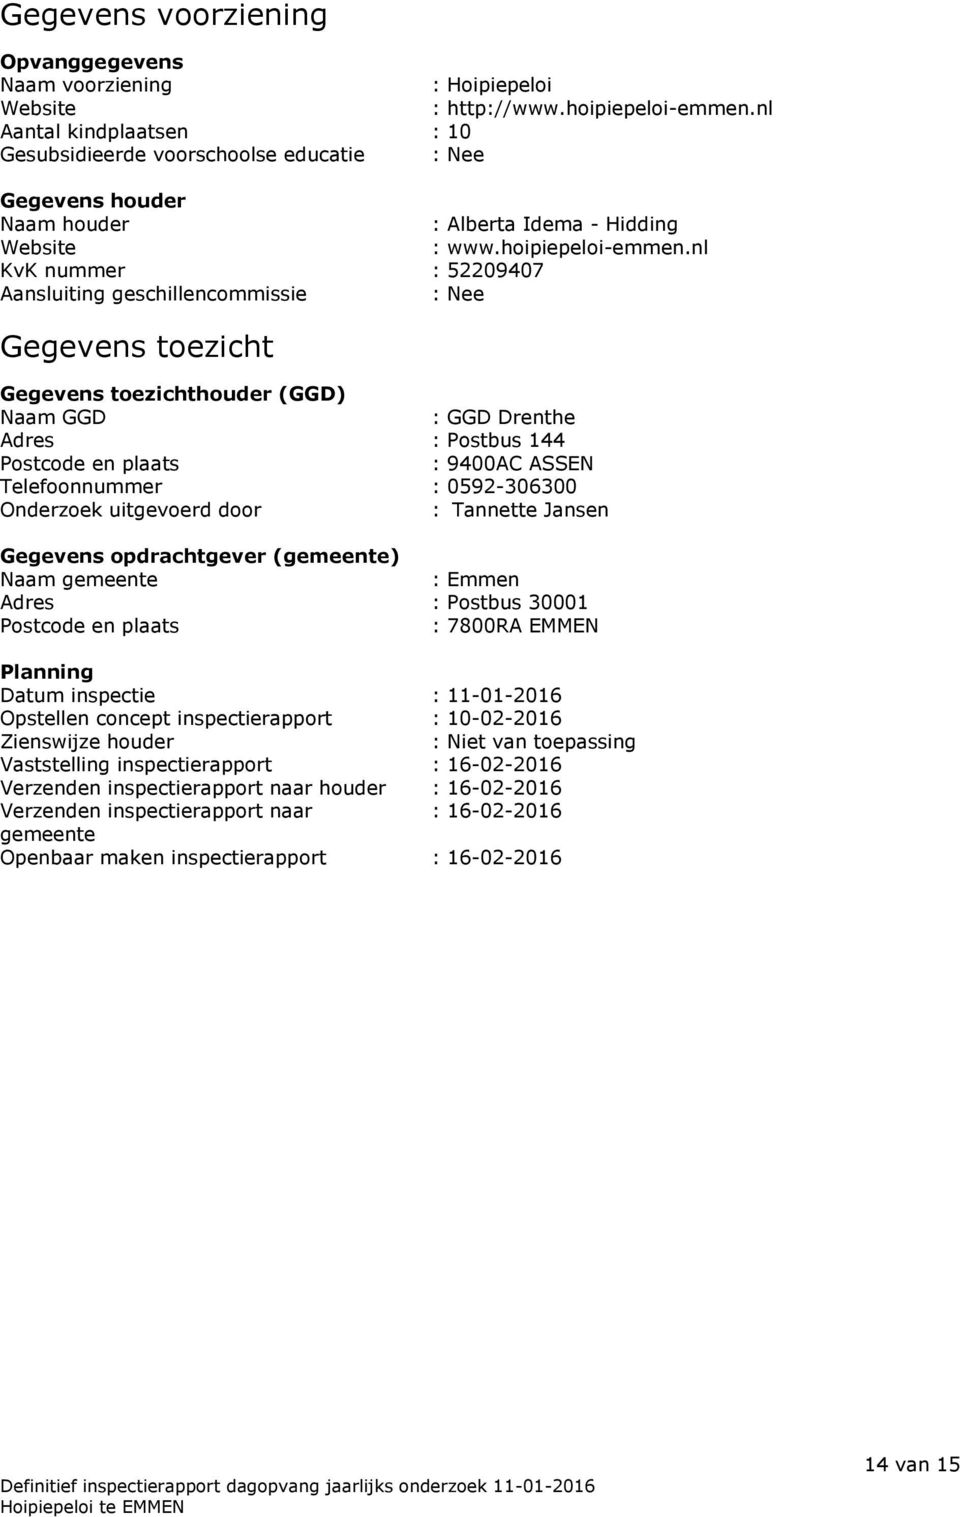 nl KvK nummer : 52209407 Aansluiting geschillencommissie : Nee Gegevens toezicht Gegevens toezichthouder (GGD) Naam GGD : GGD Drenthe Adres : Postbus 144 Postcode en plaats : 9400AC ASSEN